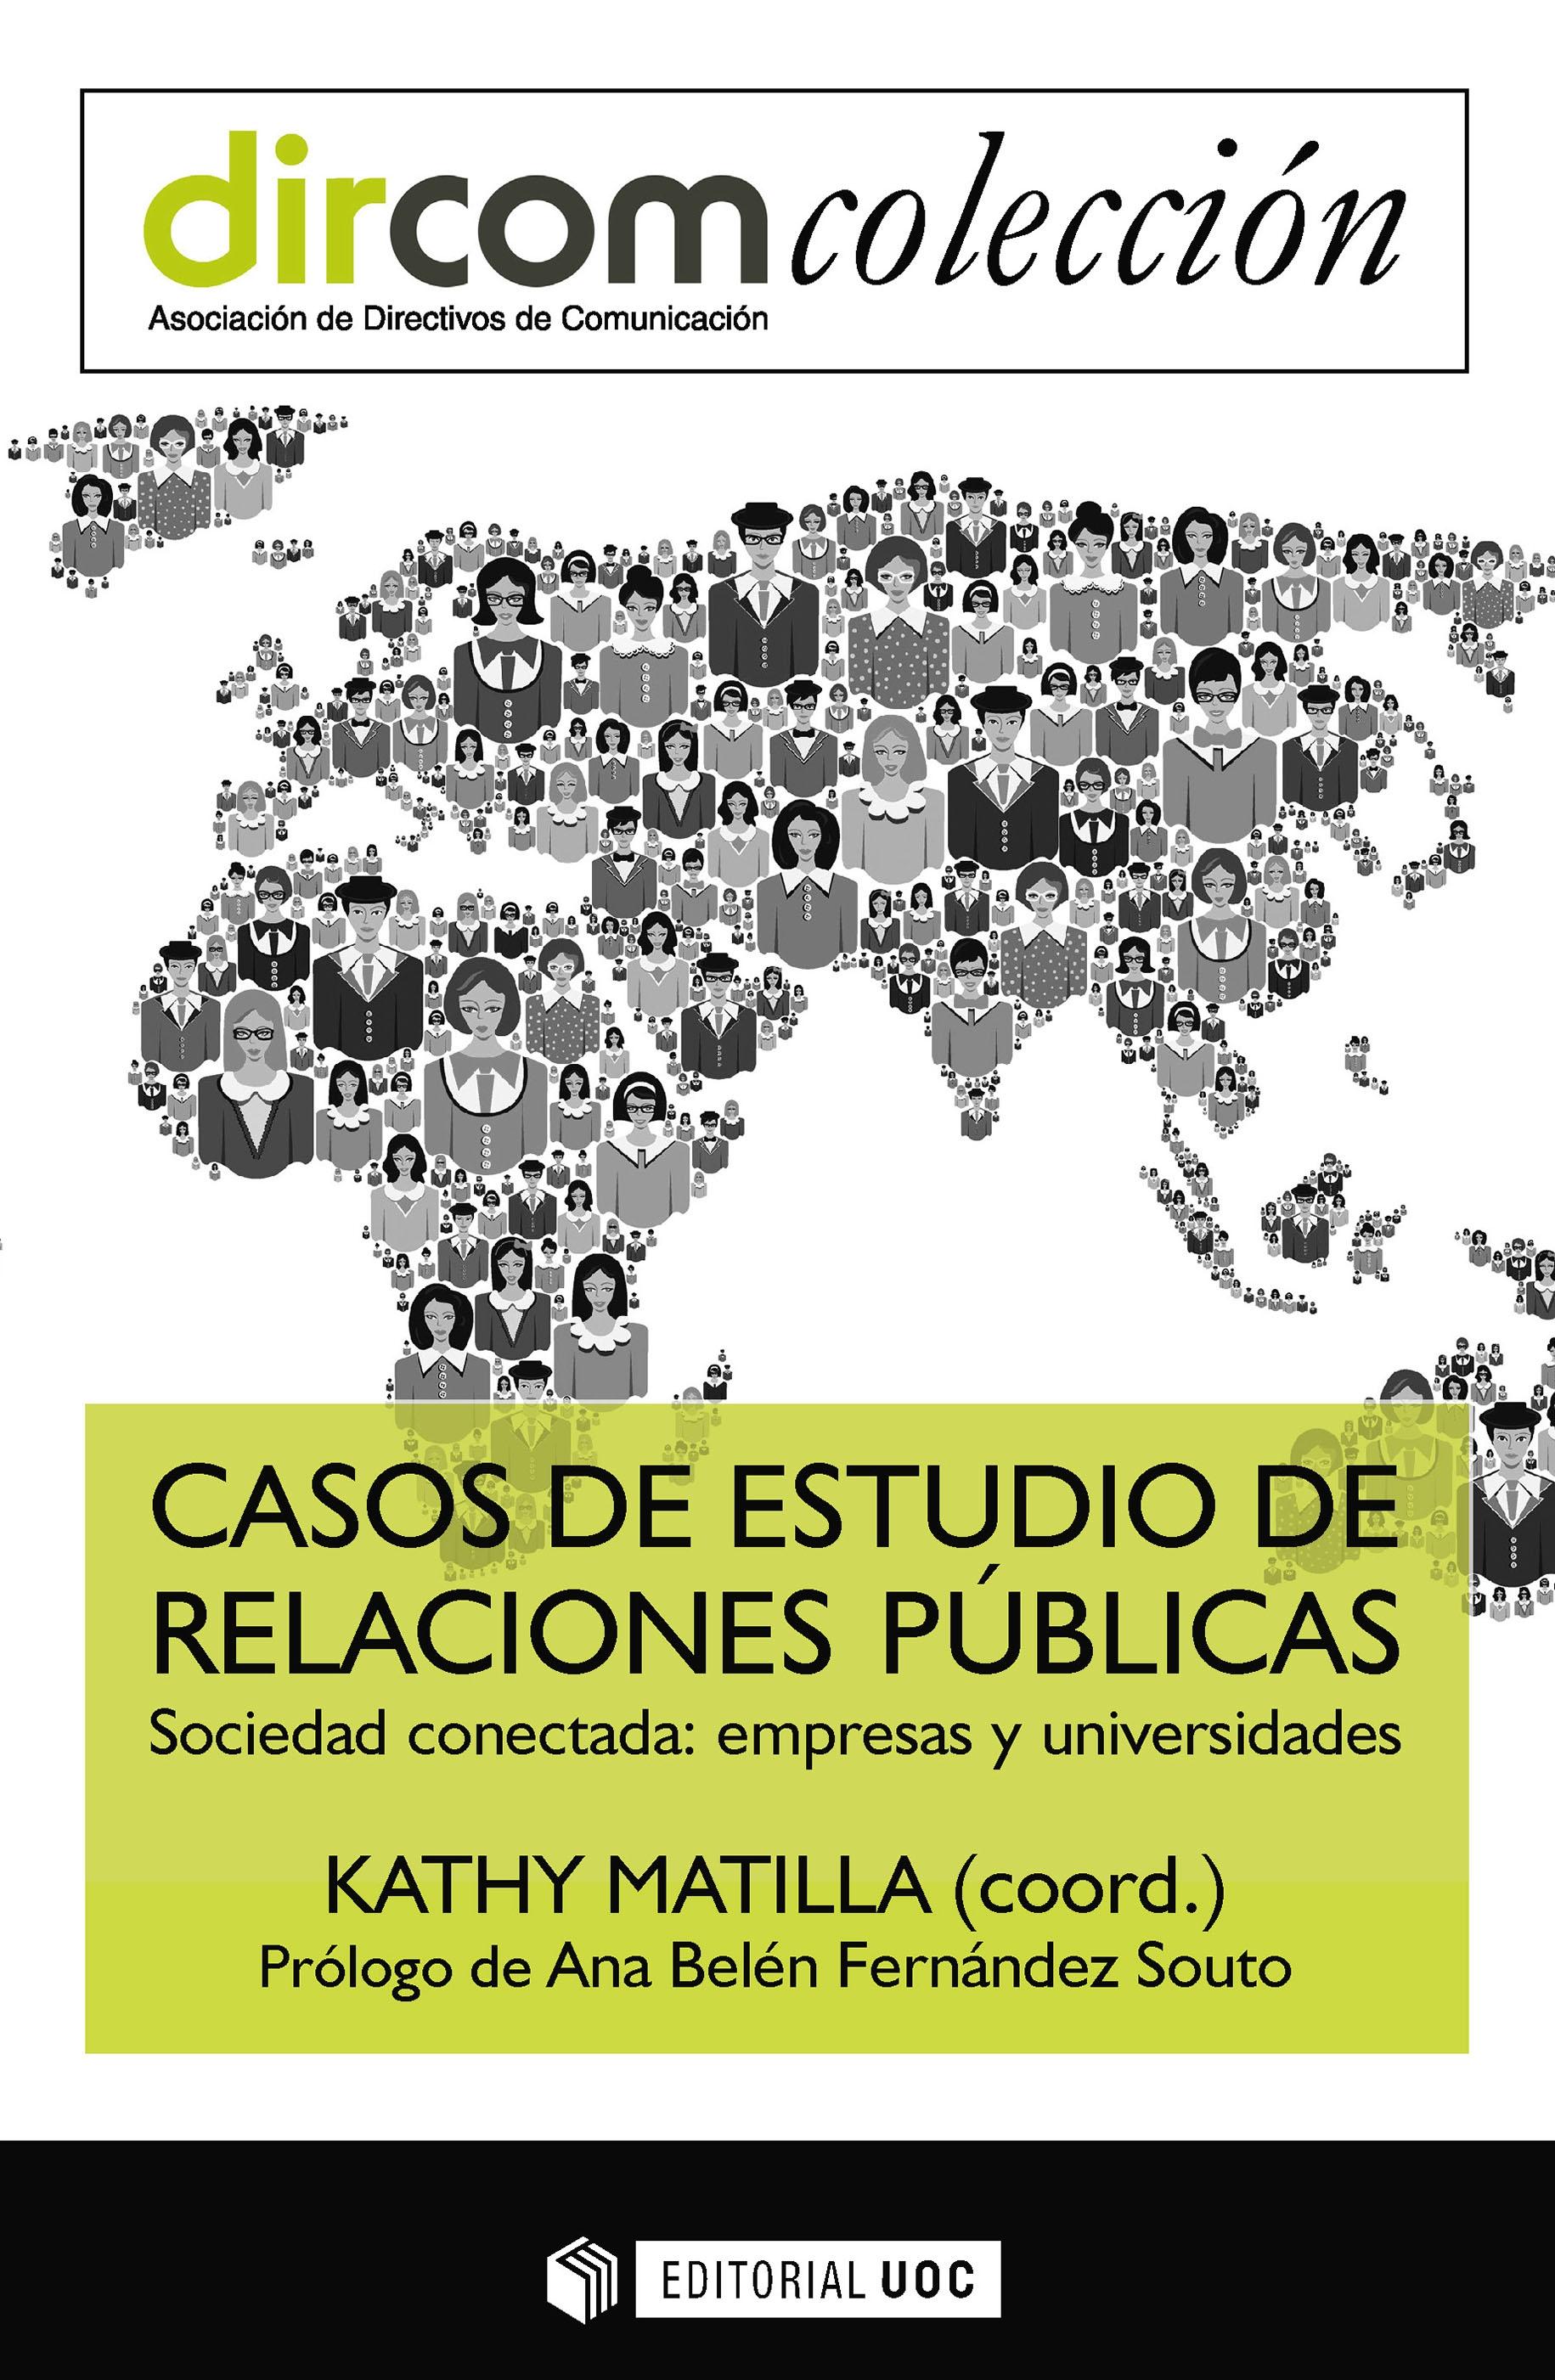 CASOS DE ESTUDIO DE RELACIONES PÚBLICAS "SOCIEDAD CONECTADA: EMPRESAS Y UNIVERSIDADES"